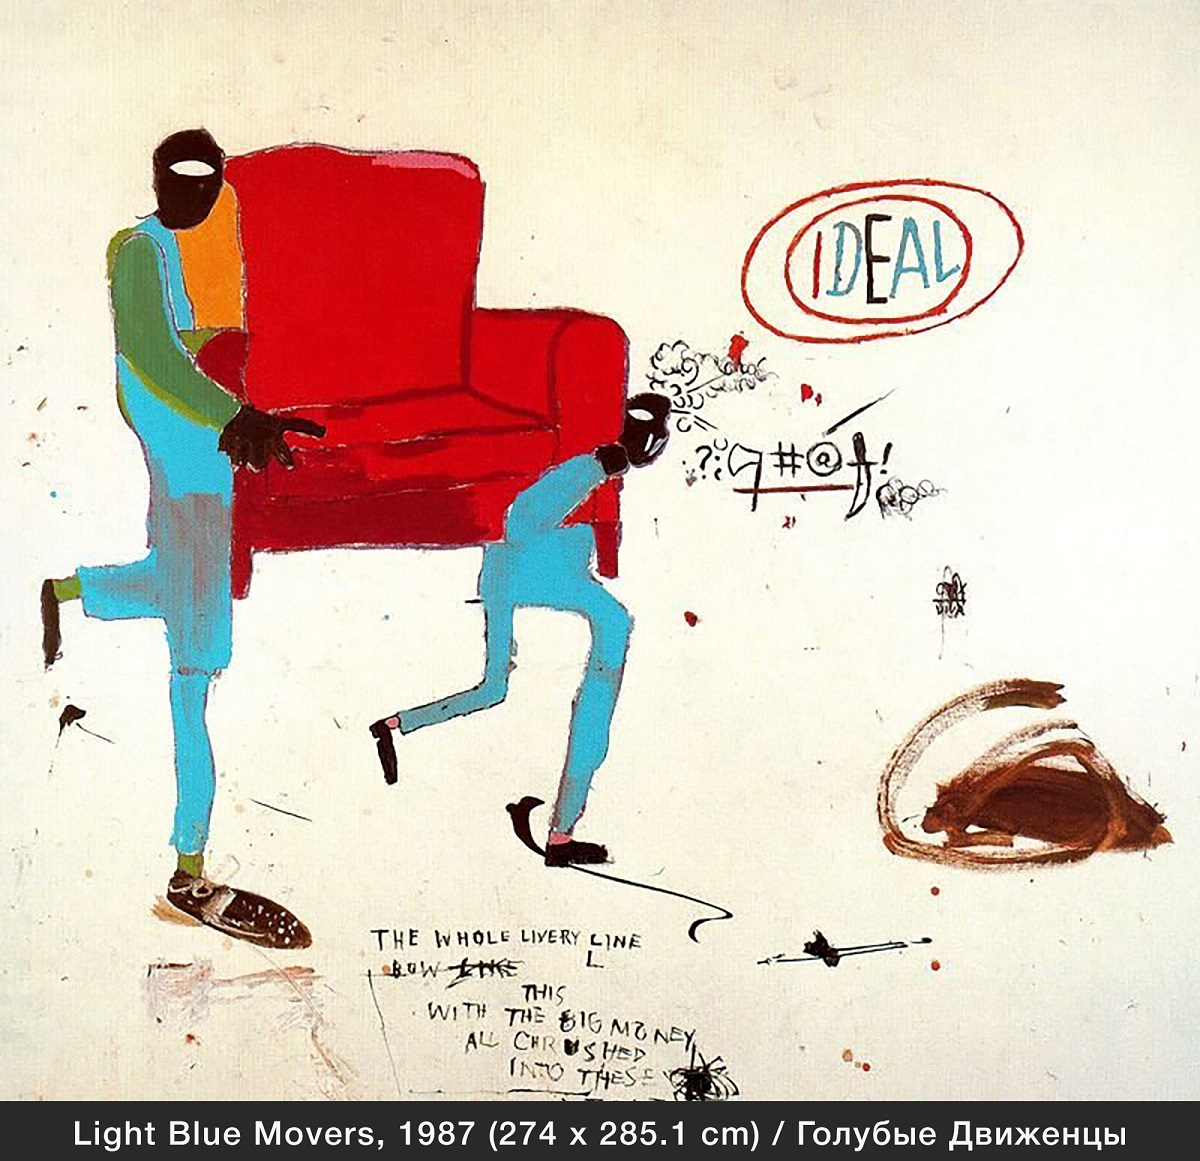 Light Blue Movers, 1987 Голубые движенцы